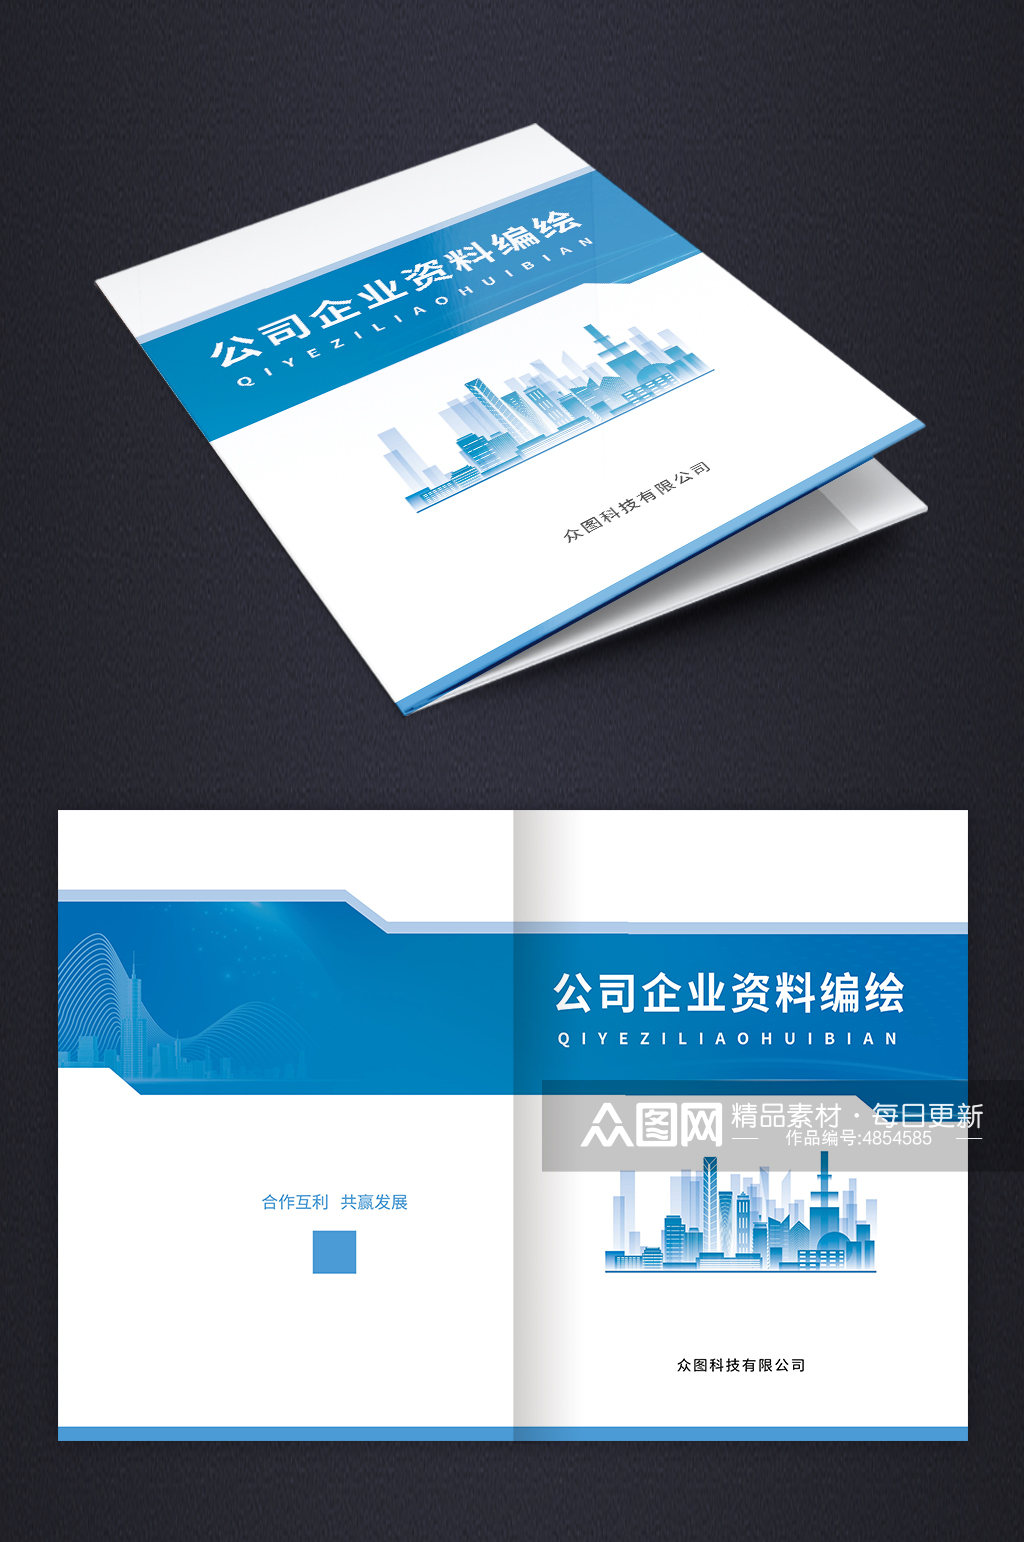 蓝色大气公司企业资料汇编画册封面设计素材